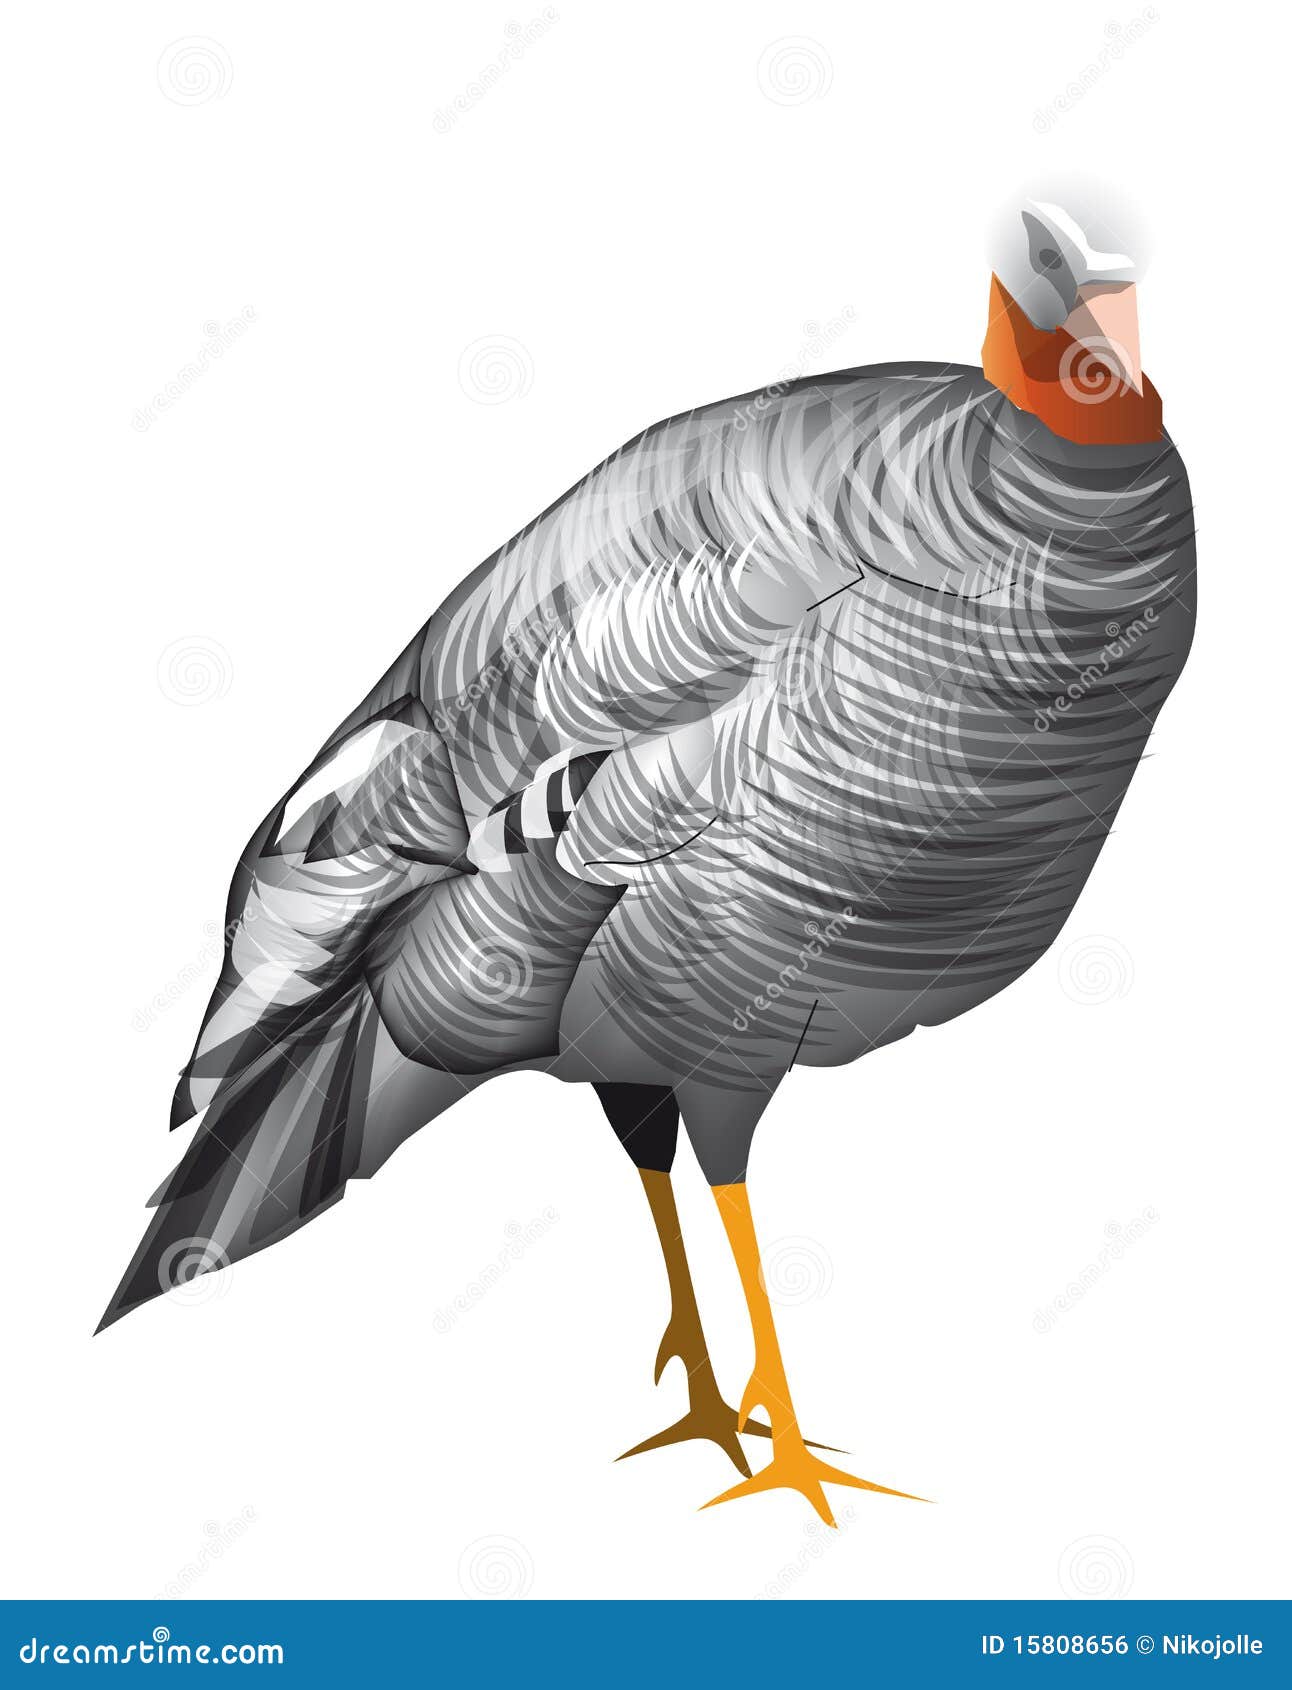 Turkey Stock Vector Illustration Of Feather Farm Bird 15808656